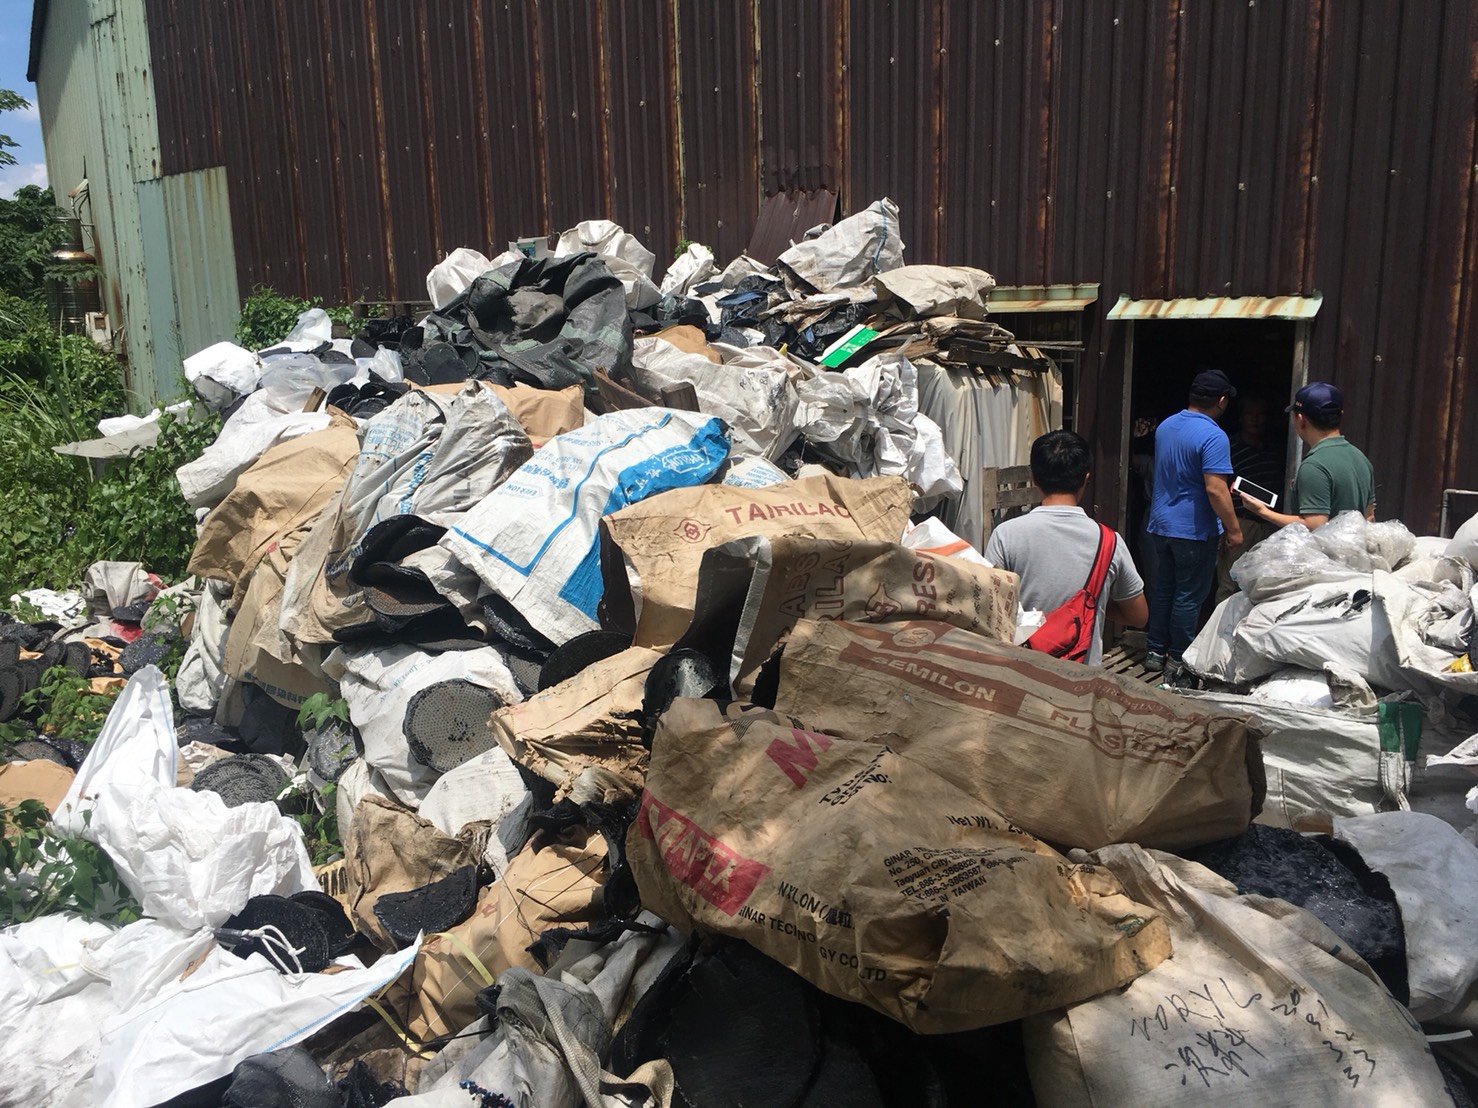 查該工廠之事業廢棄物貯存地點未保持清潔完整致污染地面，且於明顯處未以中文標示廢棄物名稱，環保局依違反廢棄物清理法第36條規定告發。